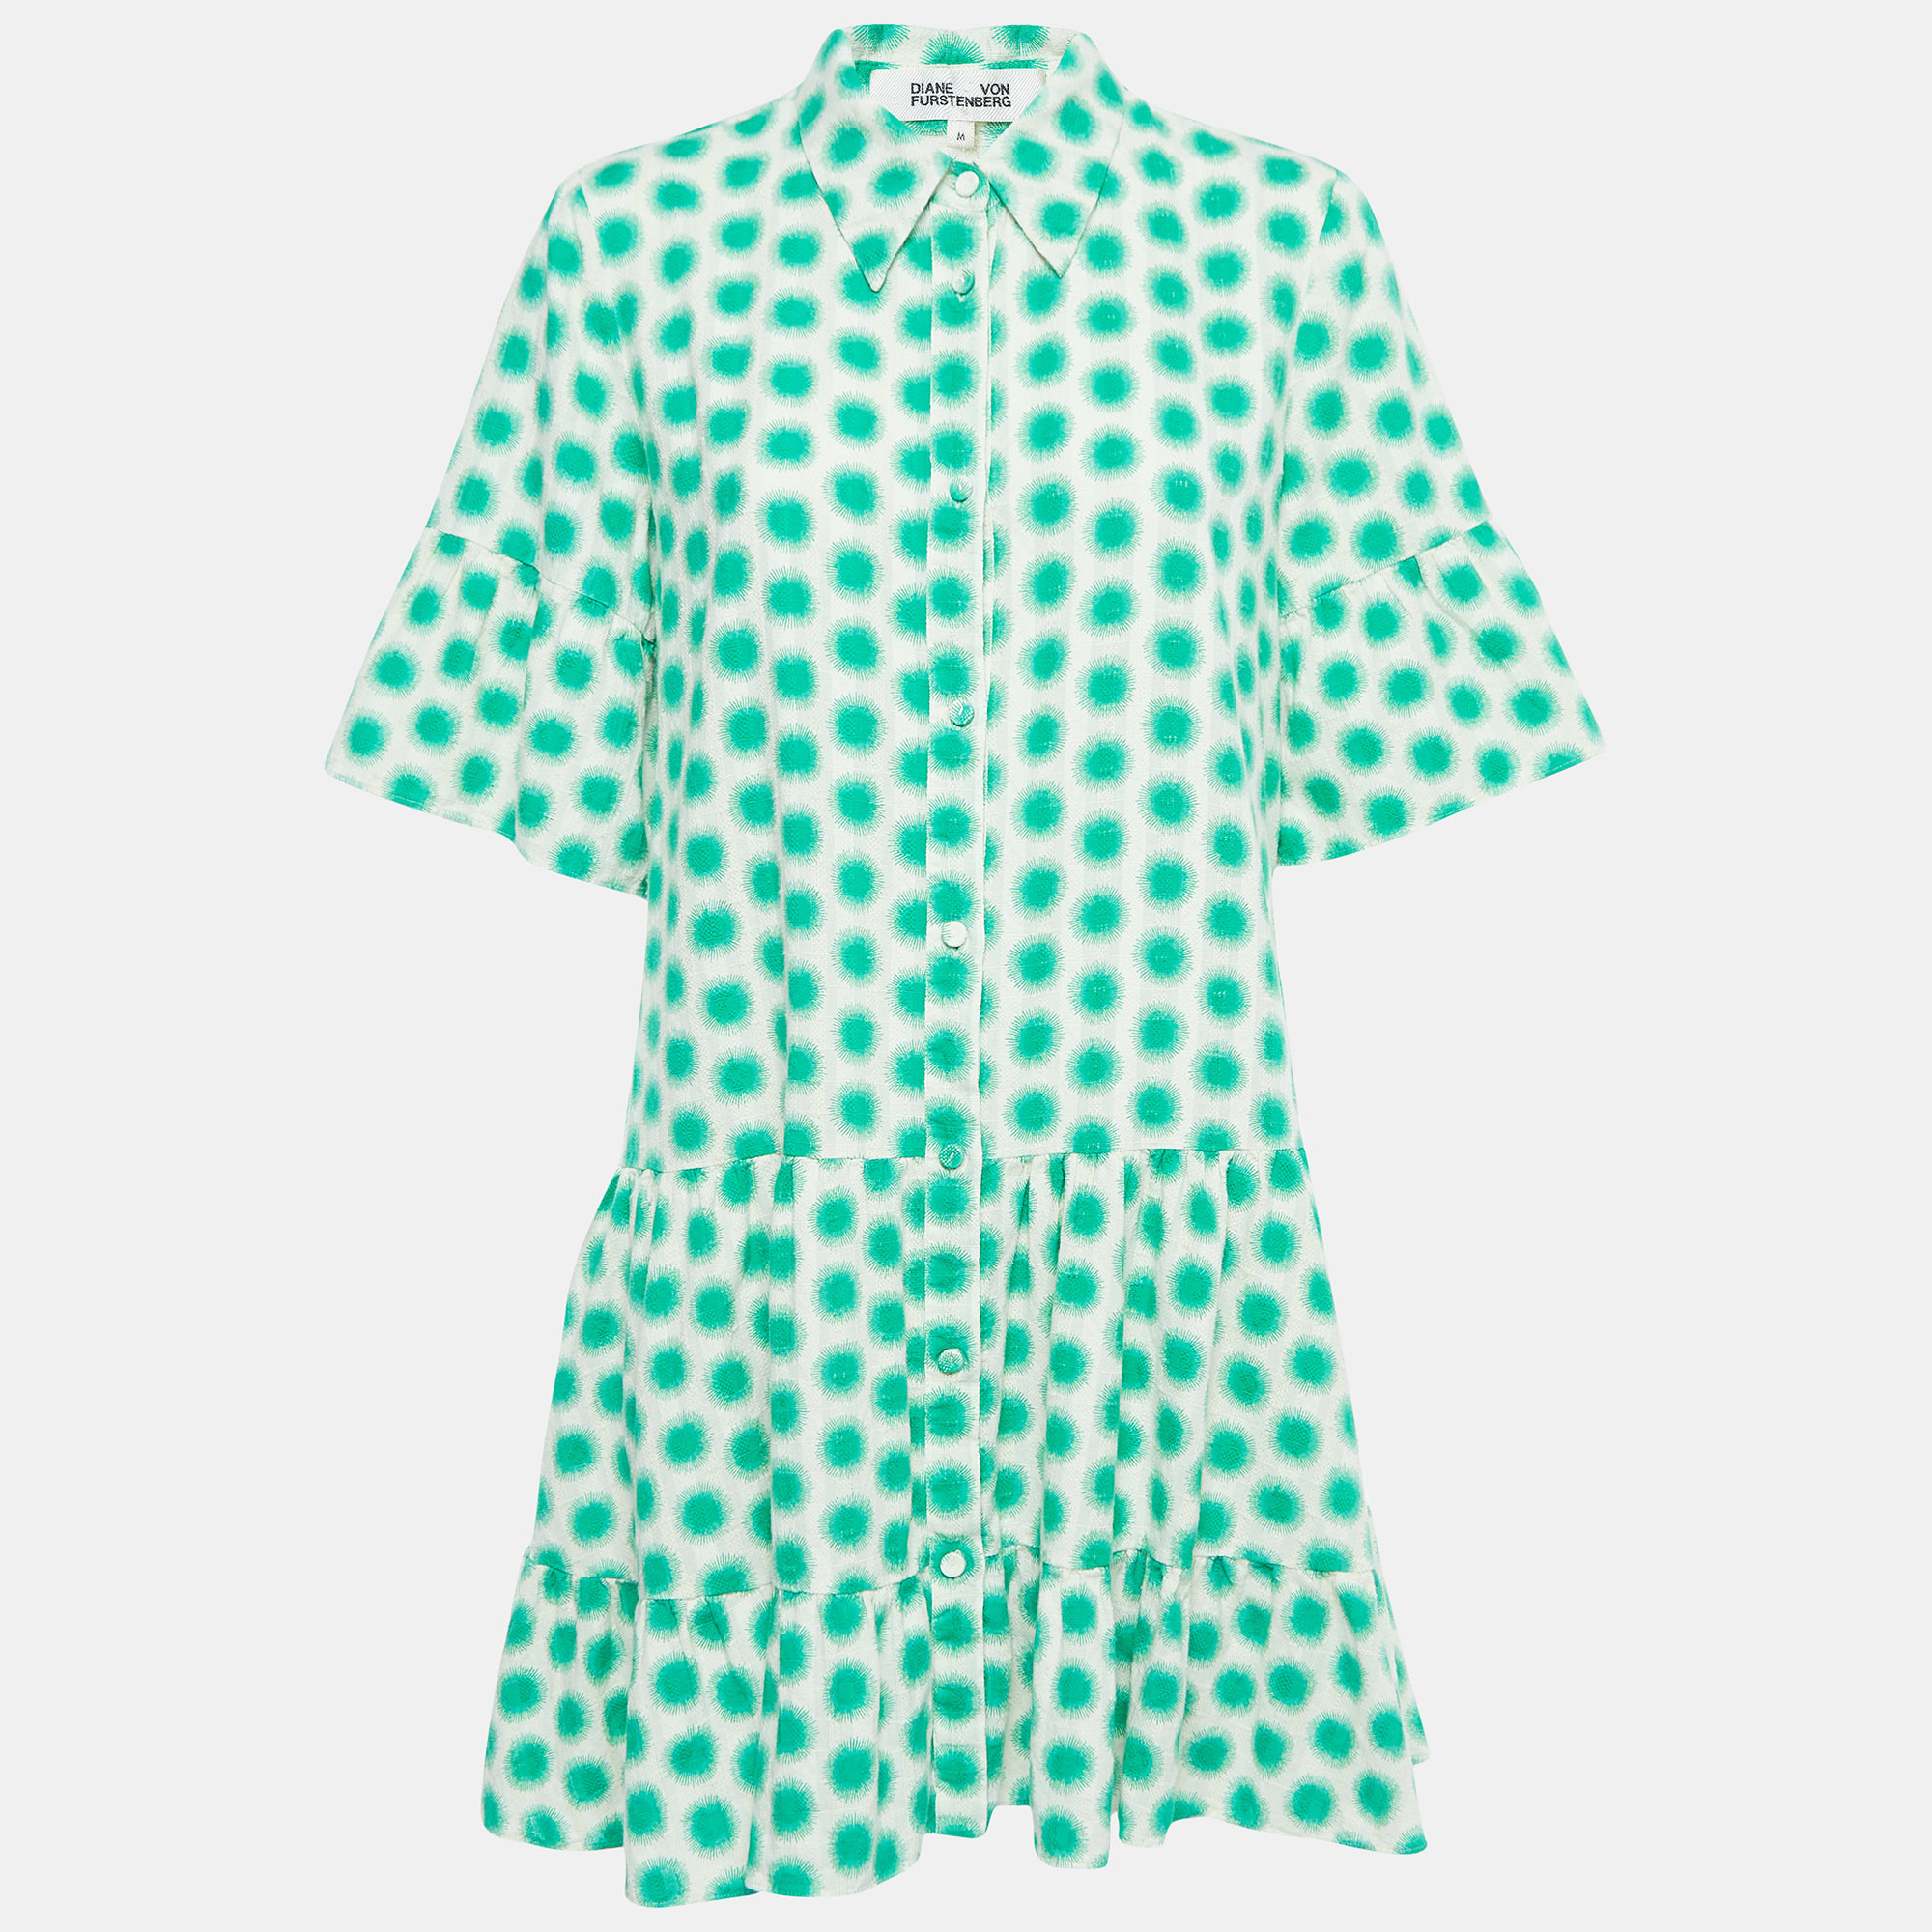 Diane Von Furstenberg Cream/Green Print Cotton Button Front Mini Dress M